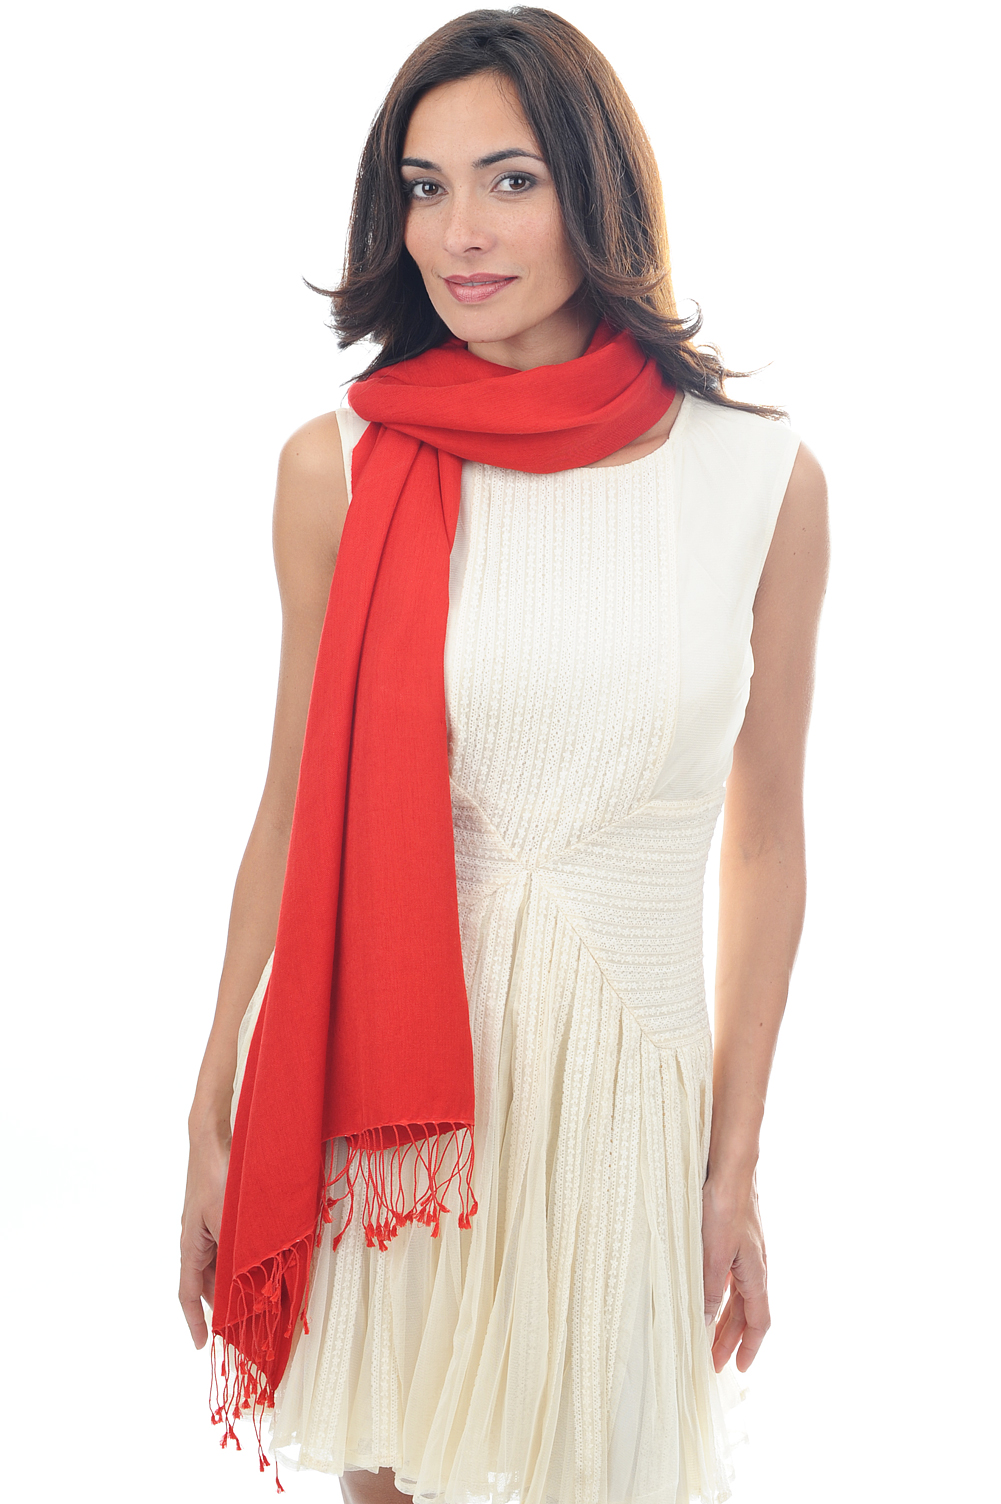 Cachemire et Soie accessoires etoles chales platine rouge franc 204 cm x 92 cm